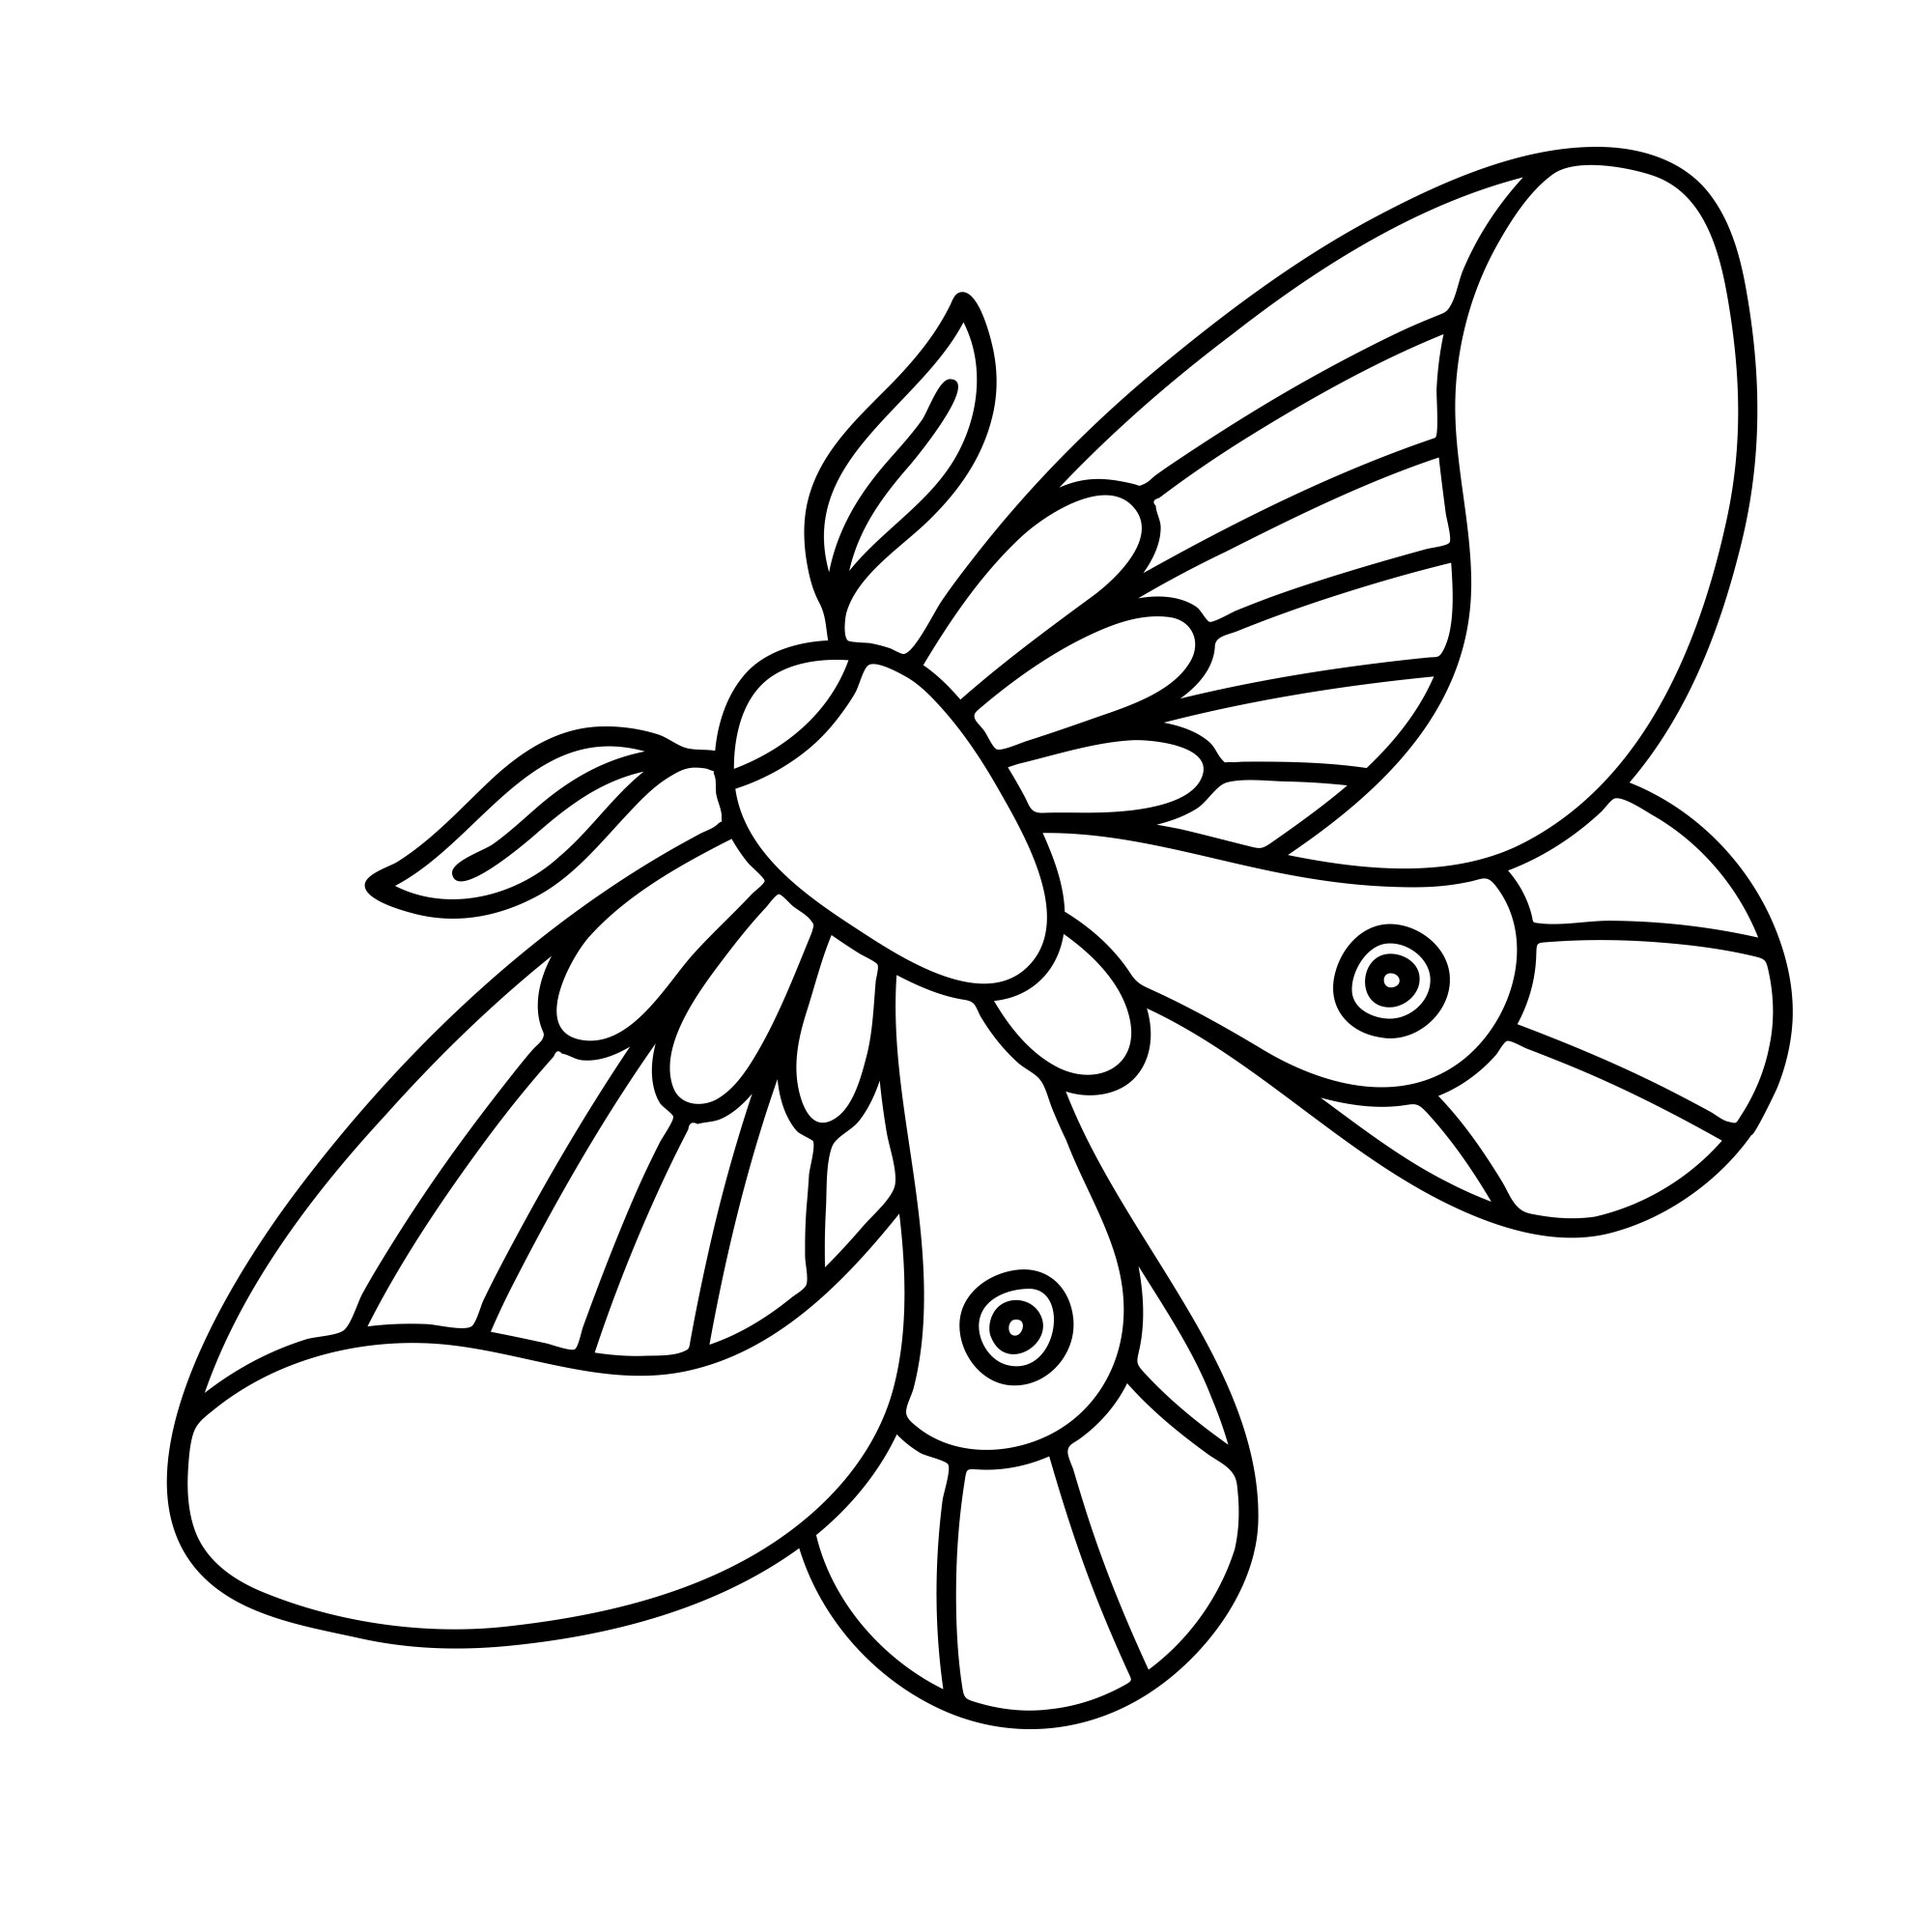 Раскраска для детей: простая бабочка с расправленными крылышками